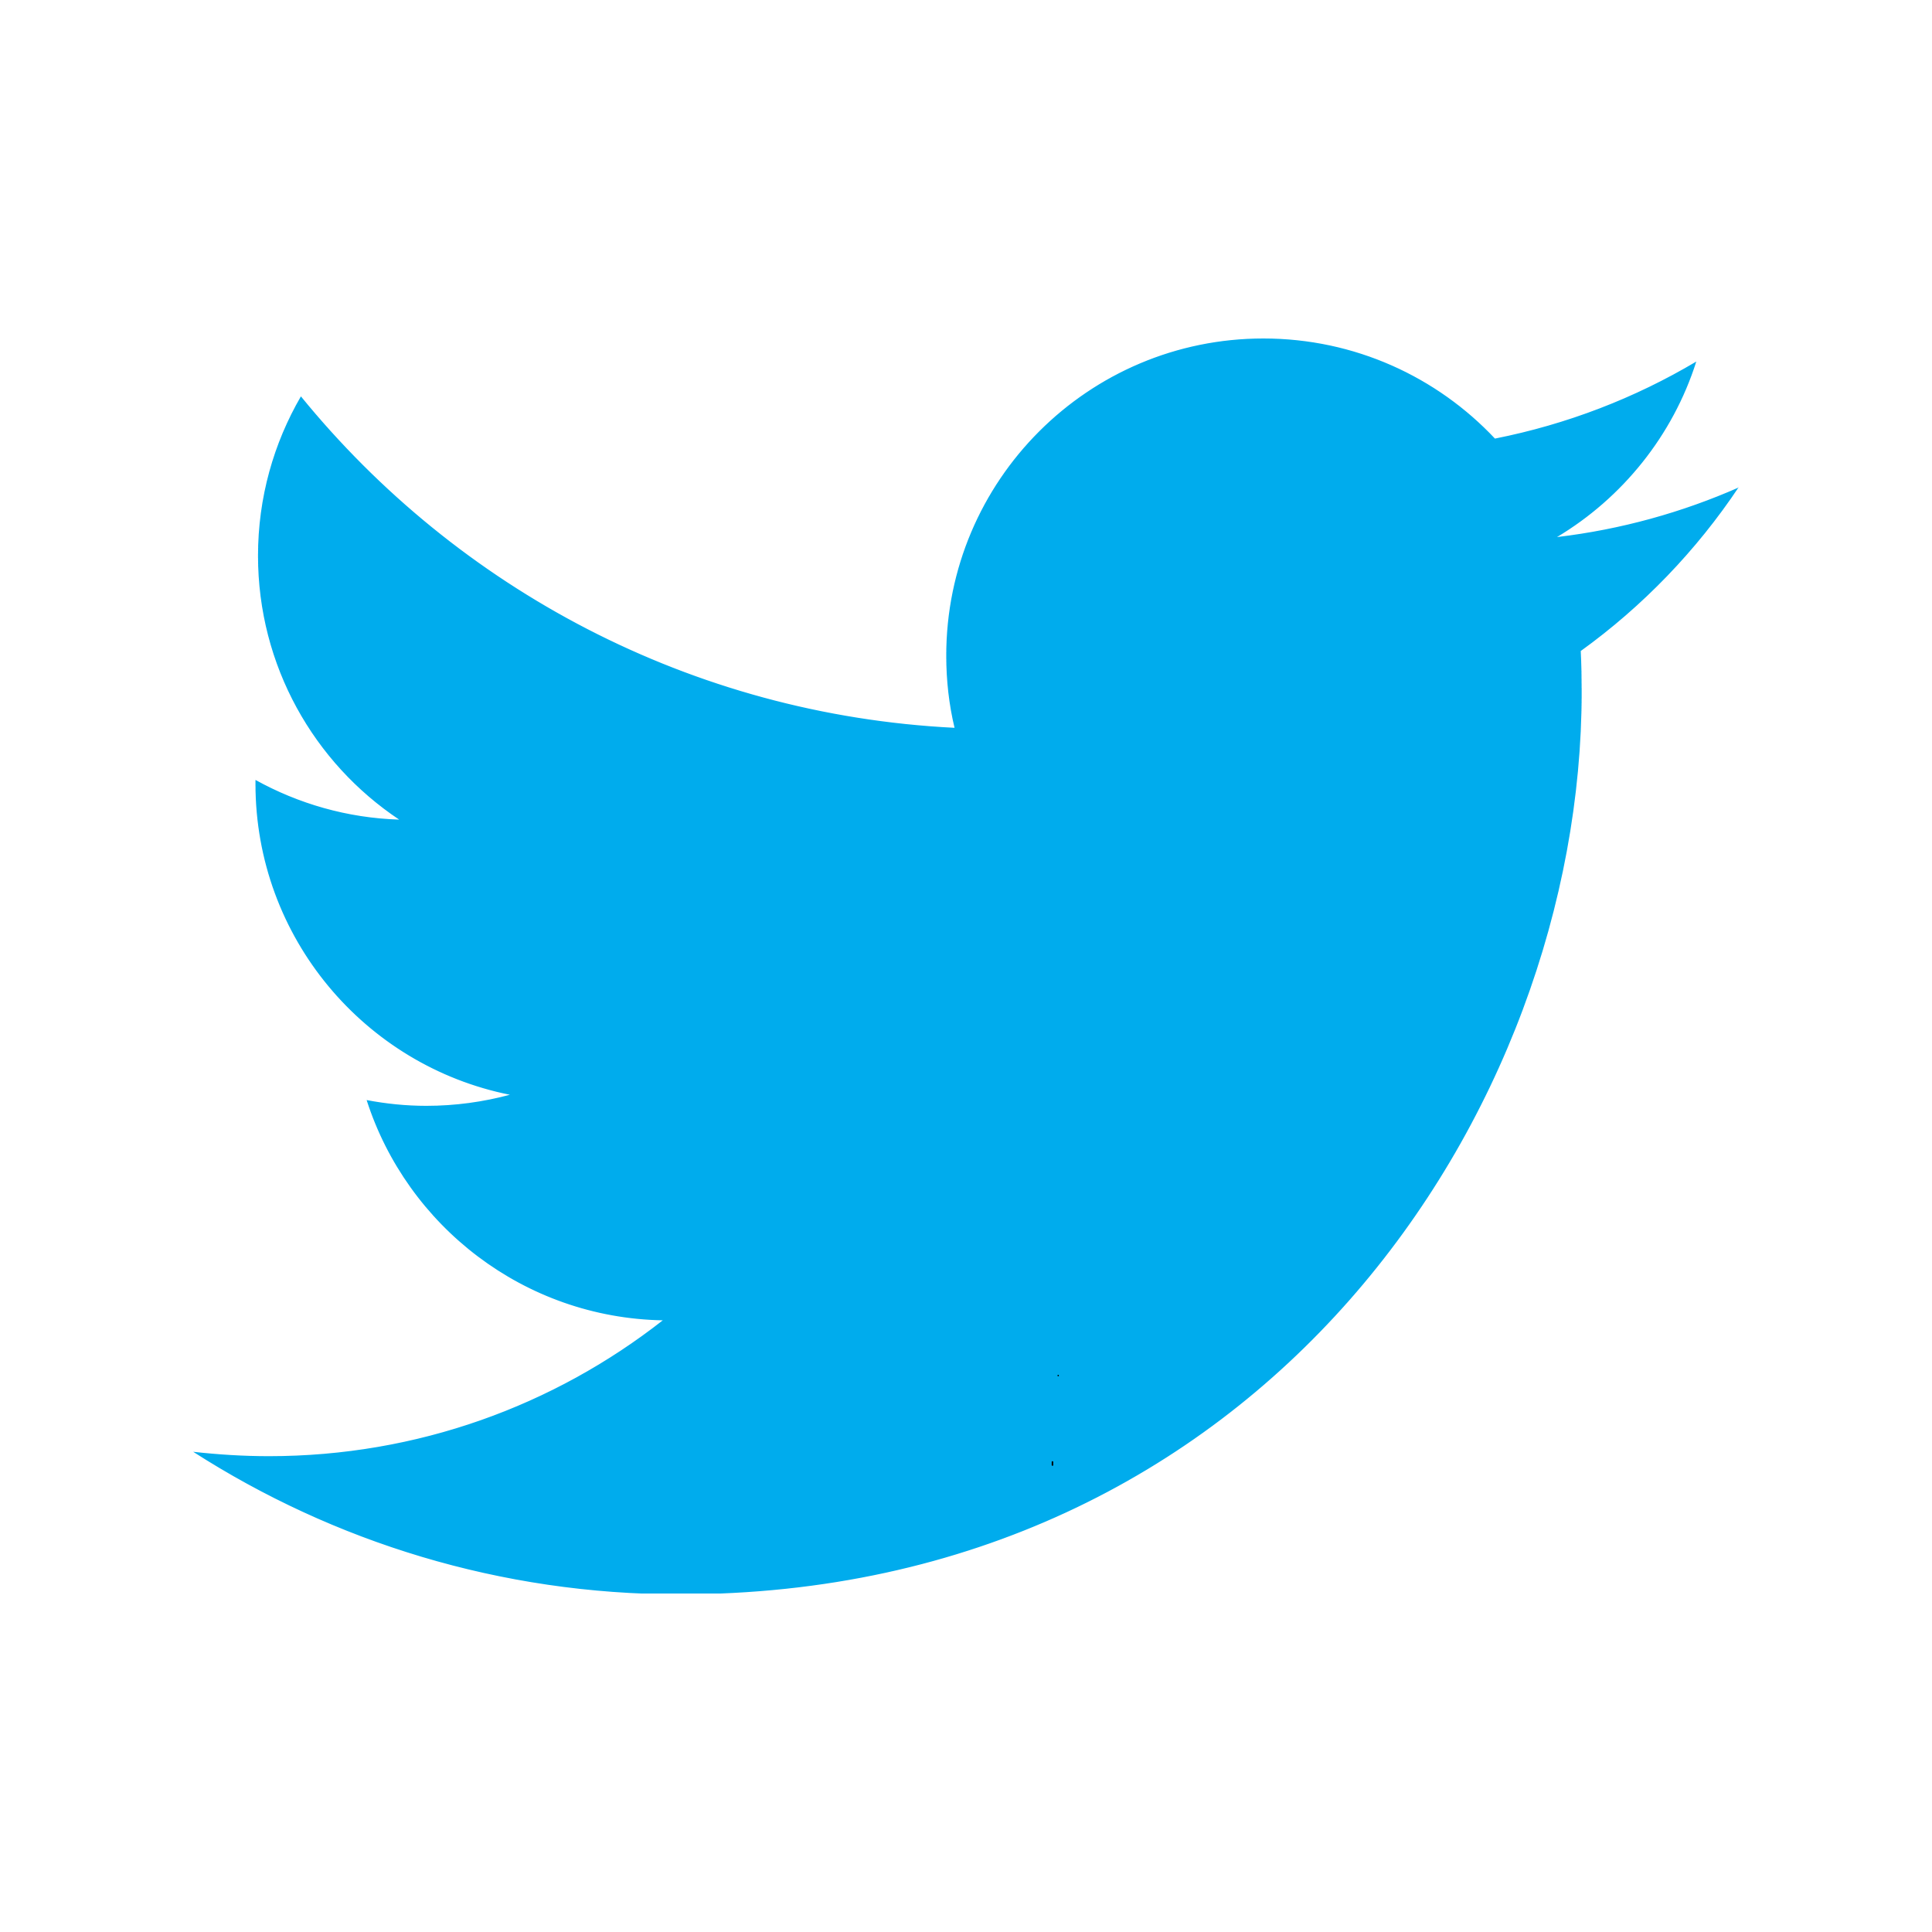 Twitter distorted round icon